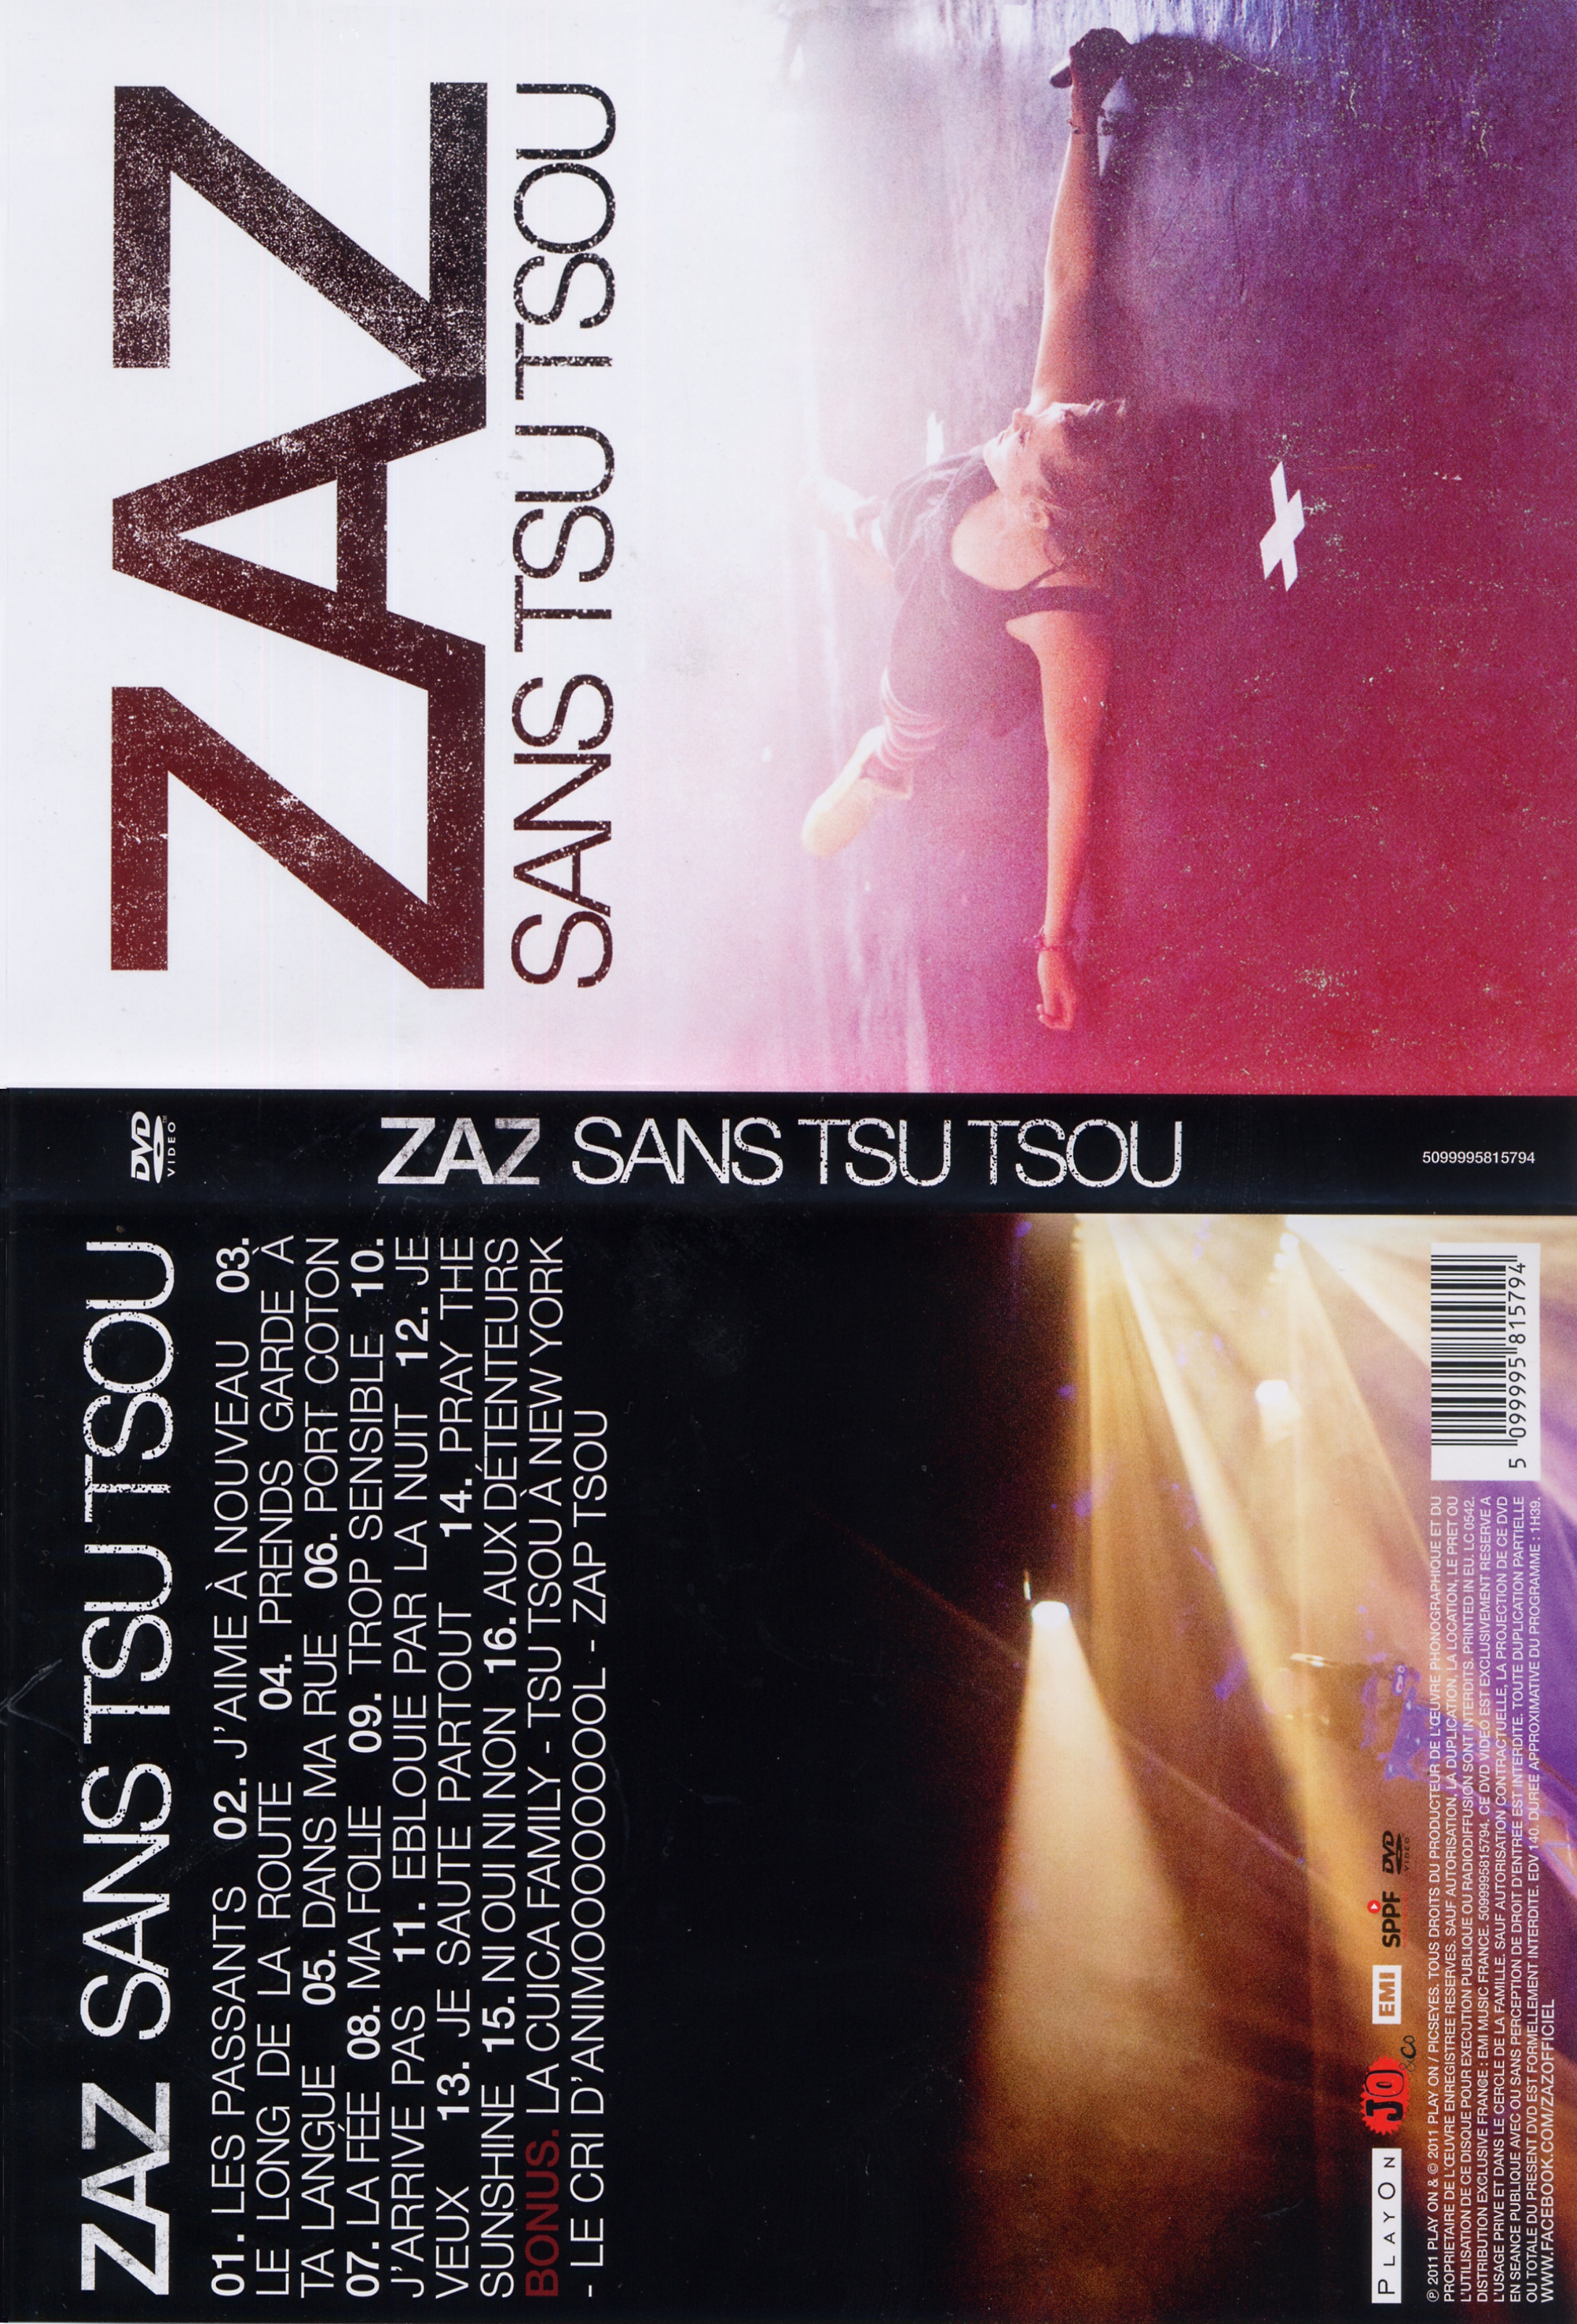 Jaquette DVD ZAZ sans tsu tsou